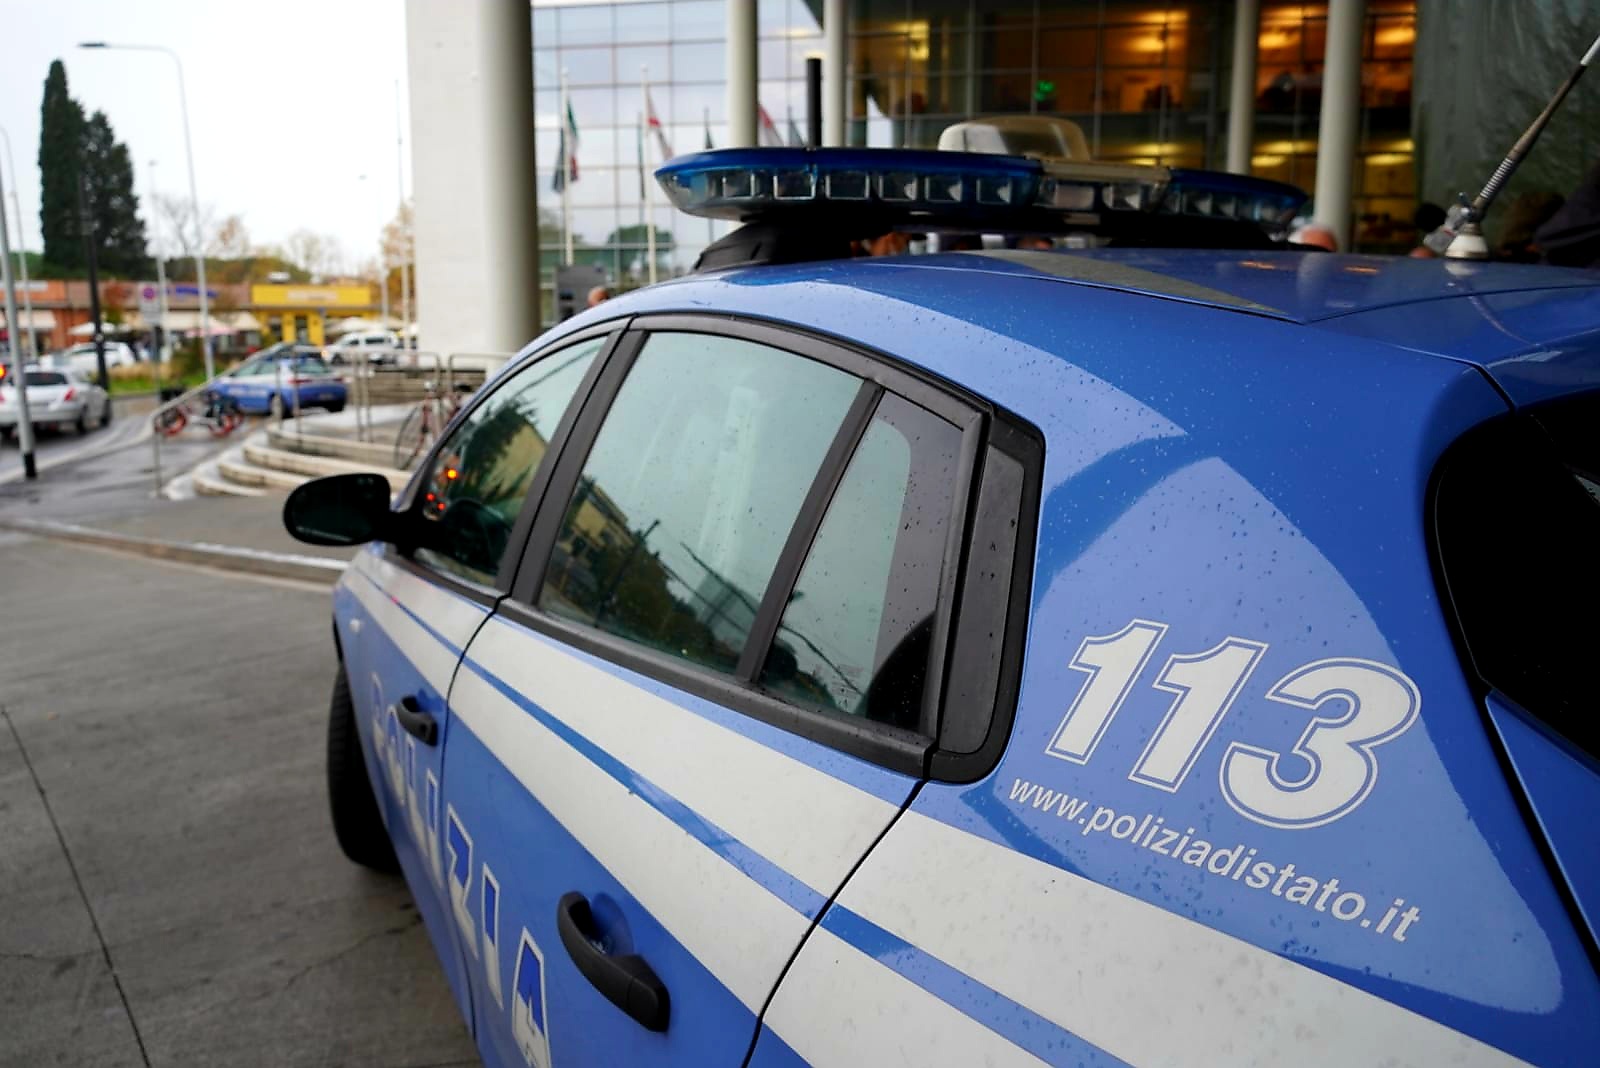 CRONACA – Suggerivano con microcamere le soluzione dei test della patente a Torino: 4 arresti